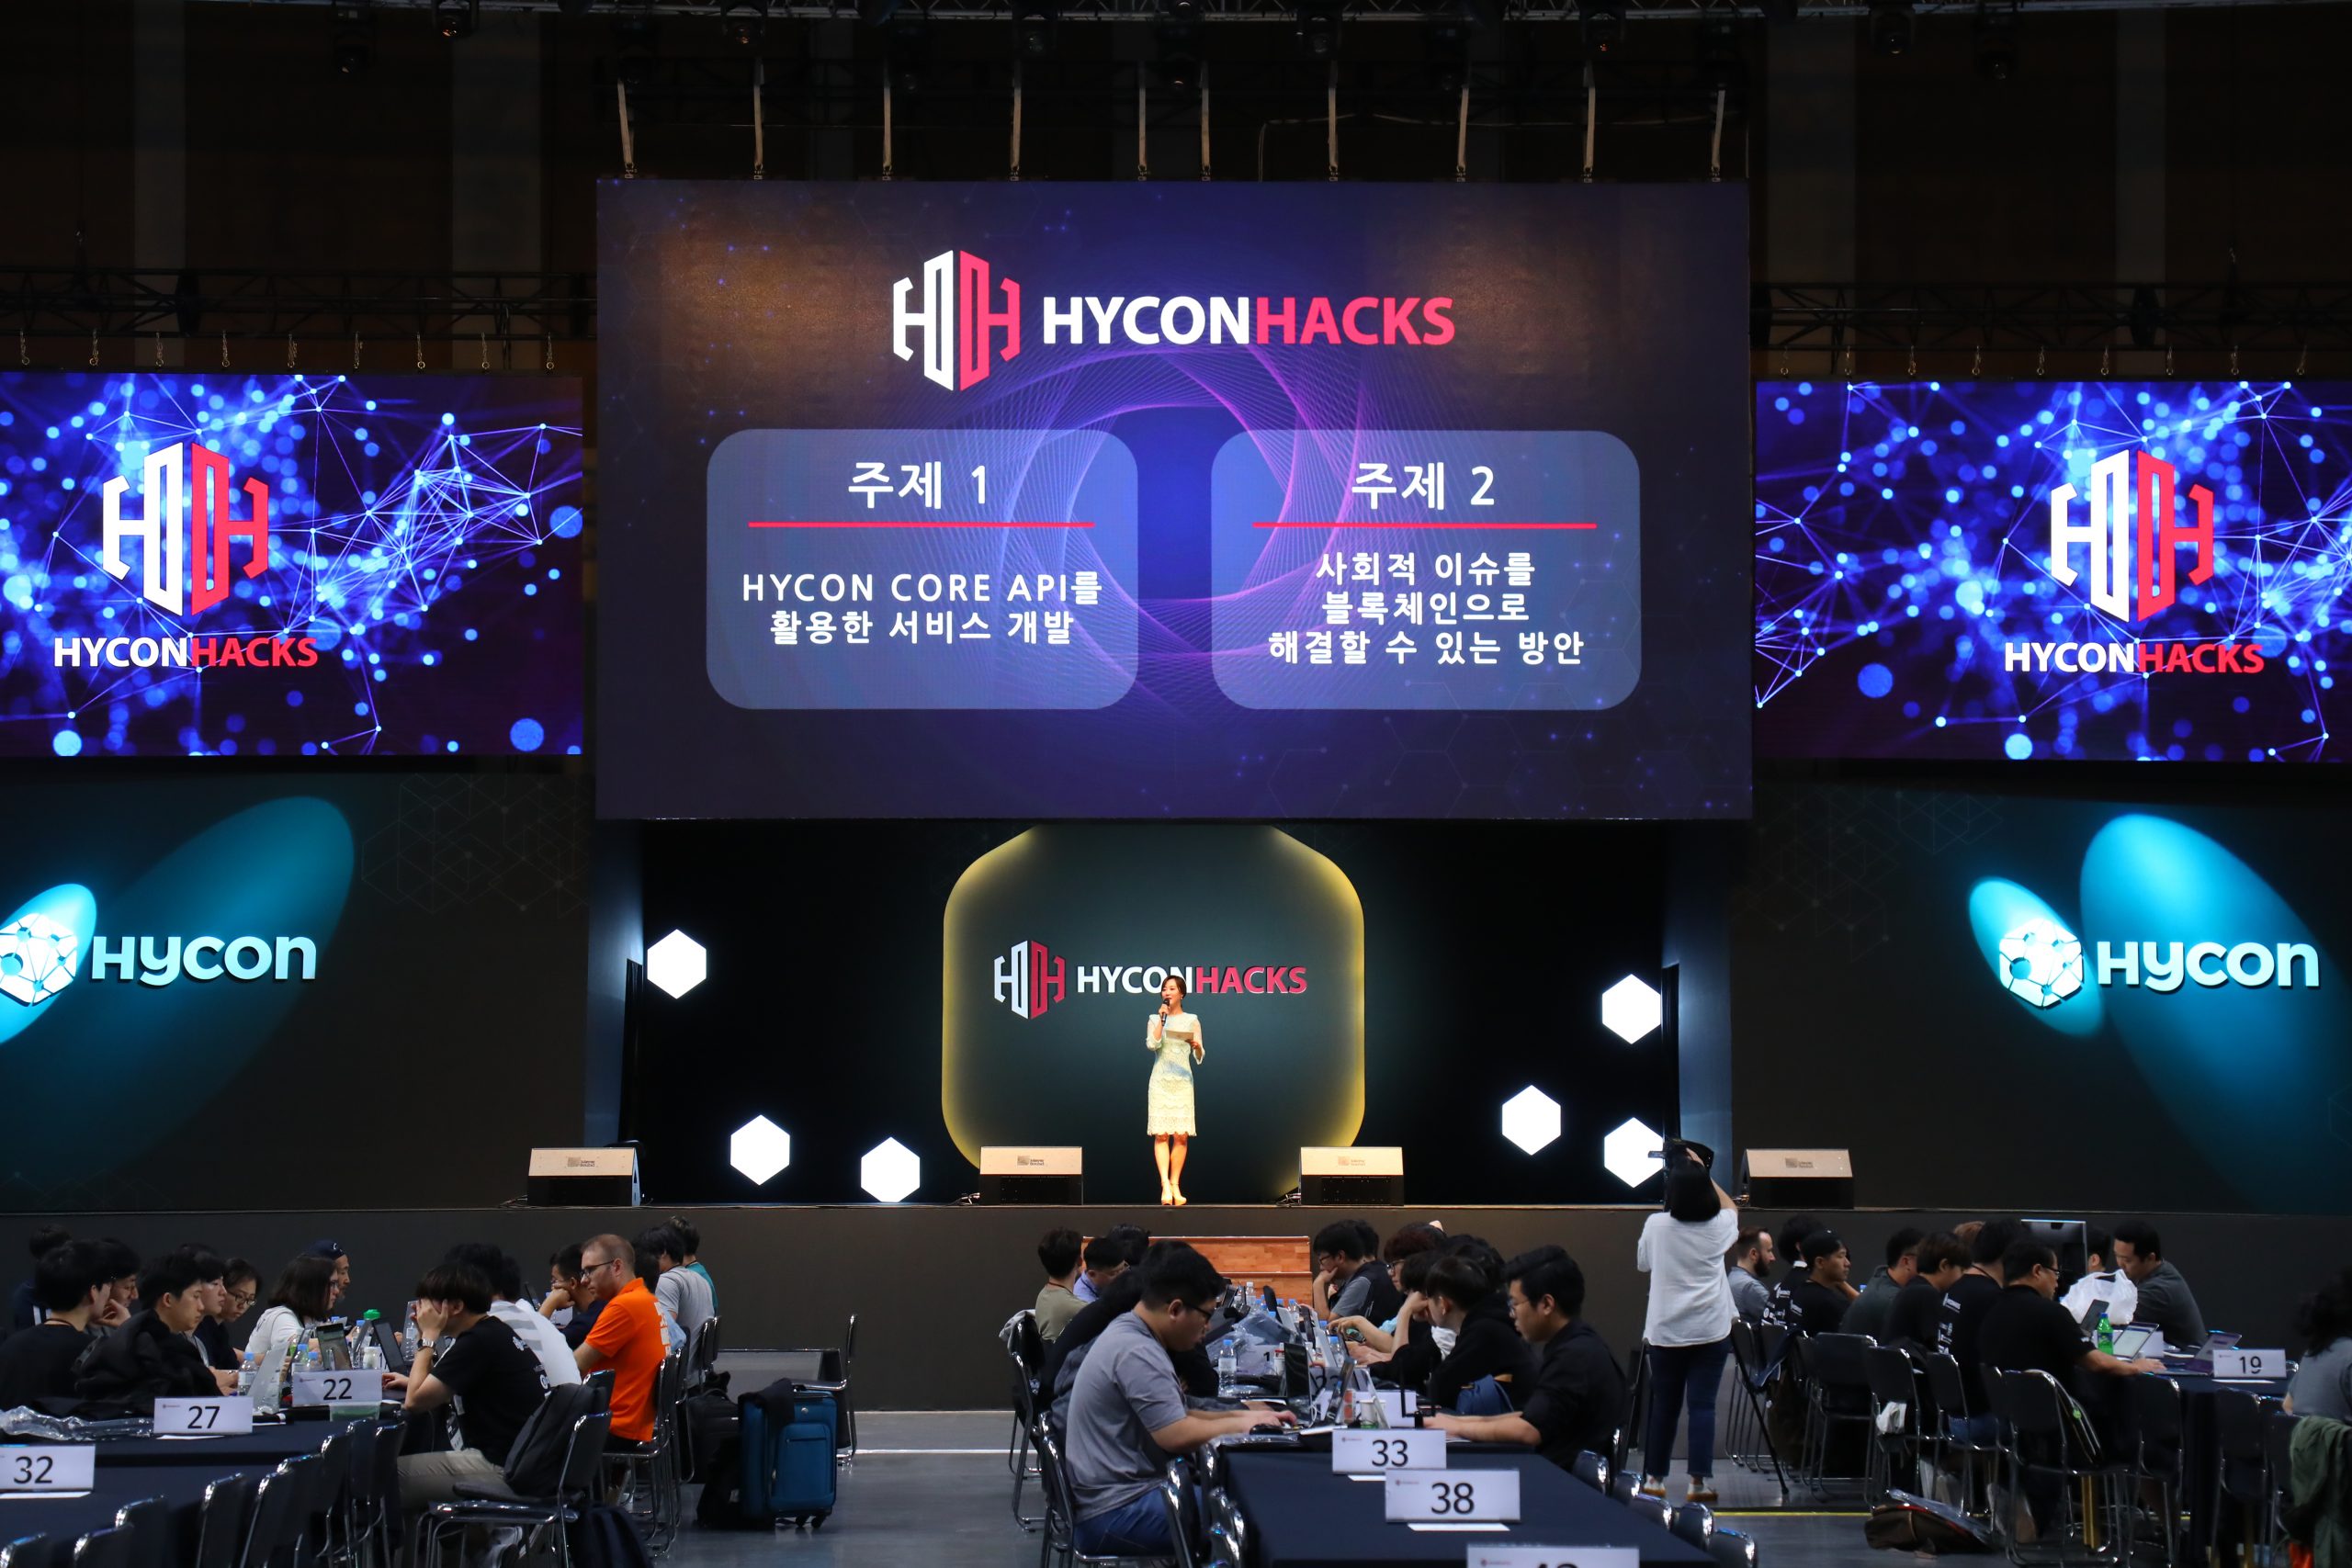 2018-하이콘핵스-해커톤-블록체인-기업행사-행사장-주제